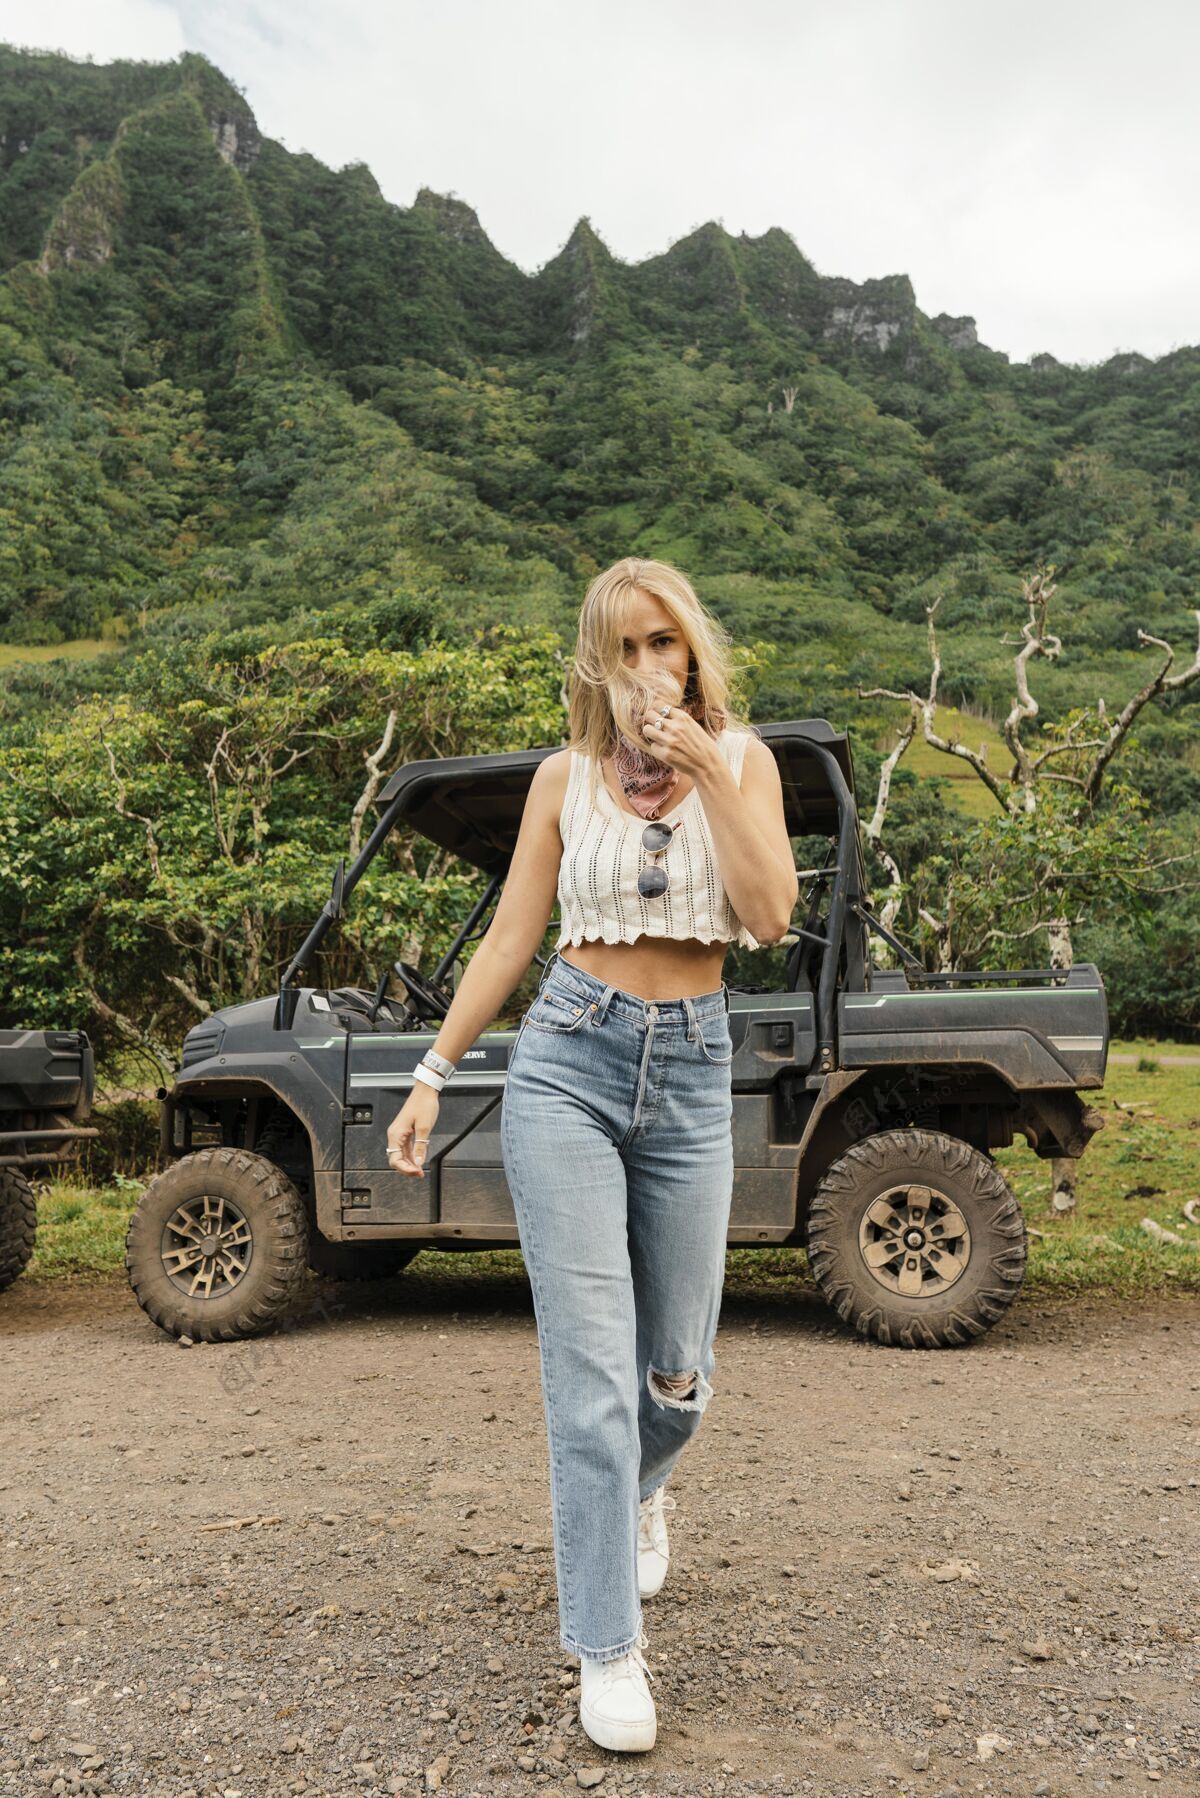 姿势夏威夷吉普车旁的女人夏威夷度假夏威夷群岛